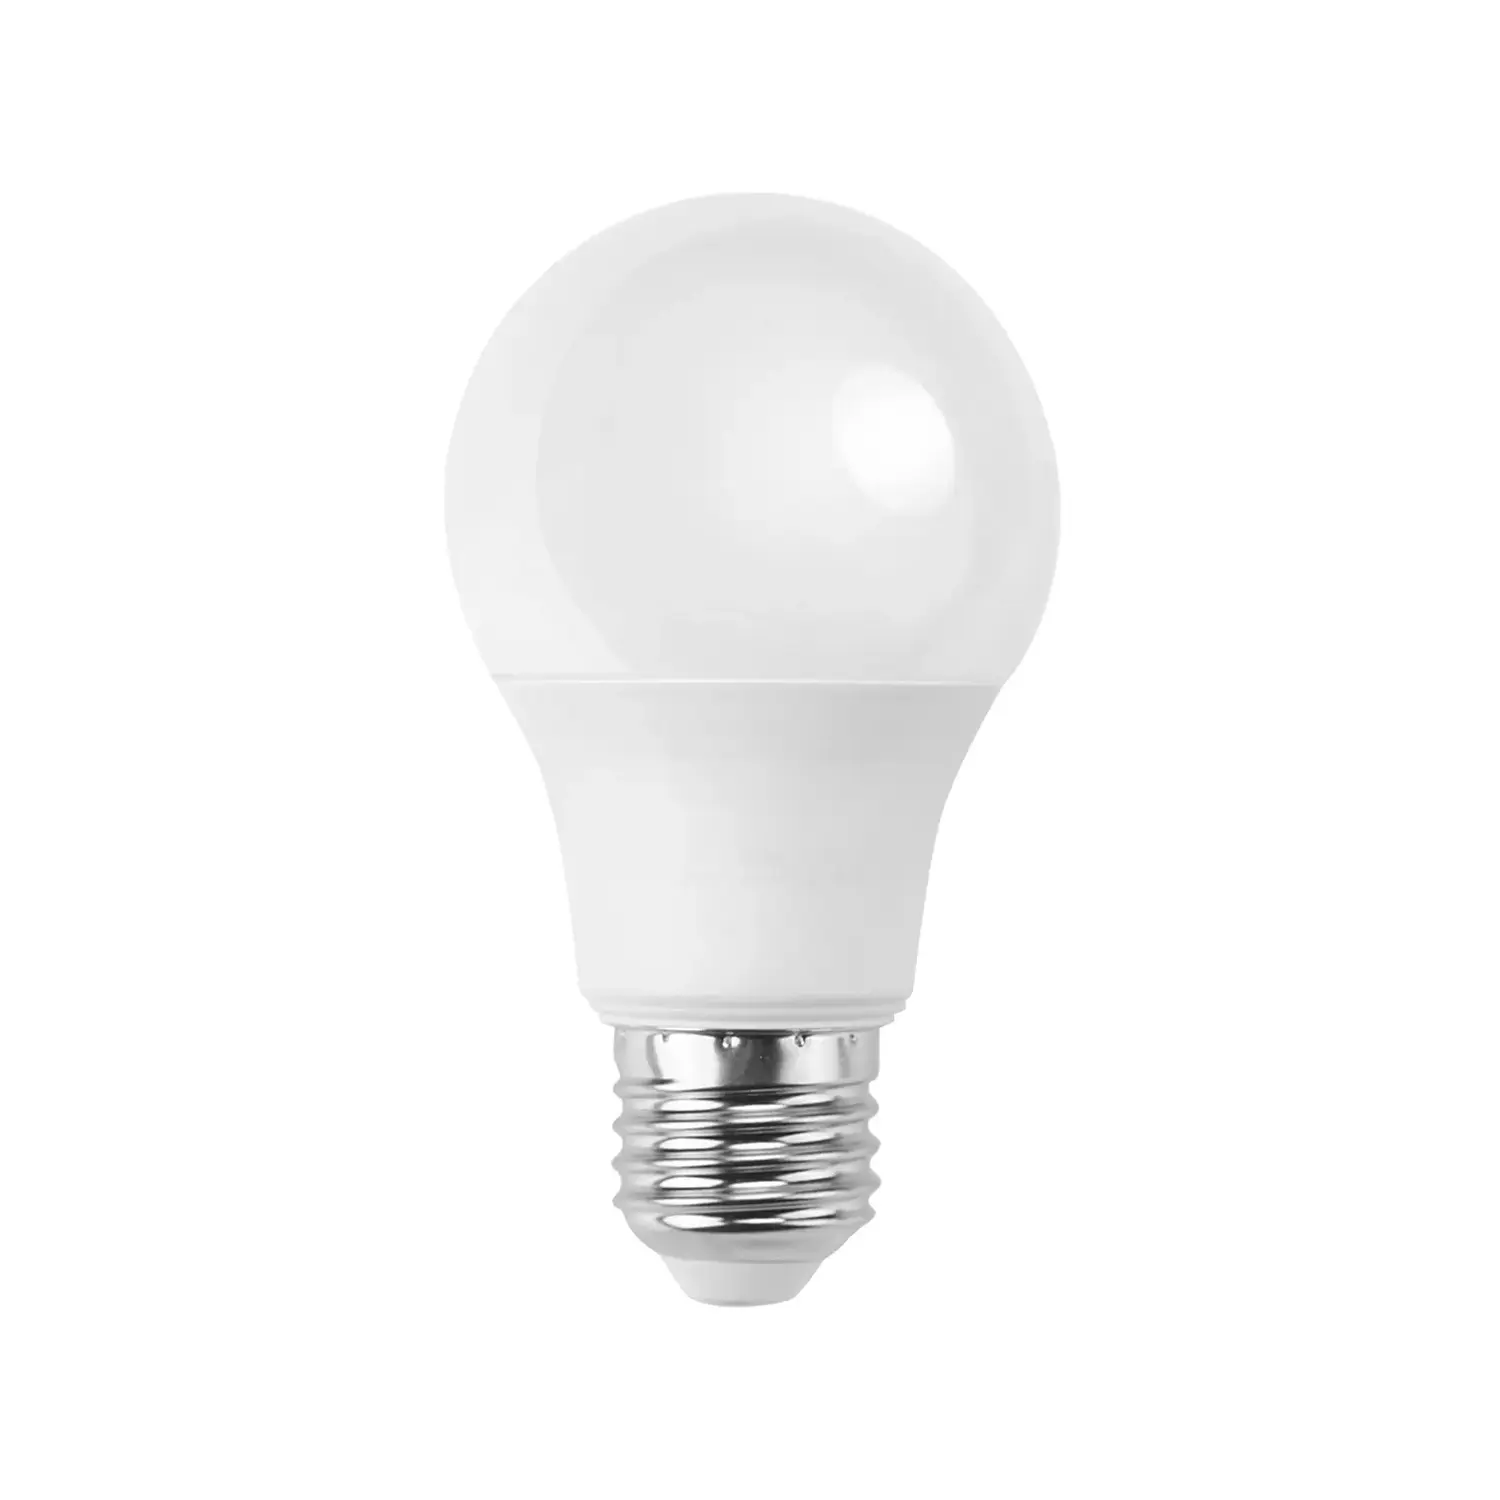 immagine del prodotto lampadina led A60 bulbo classico e27 9 watt bianco freddo